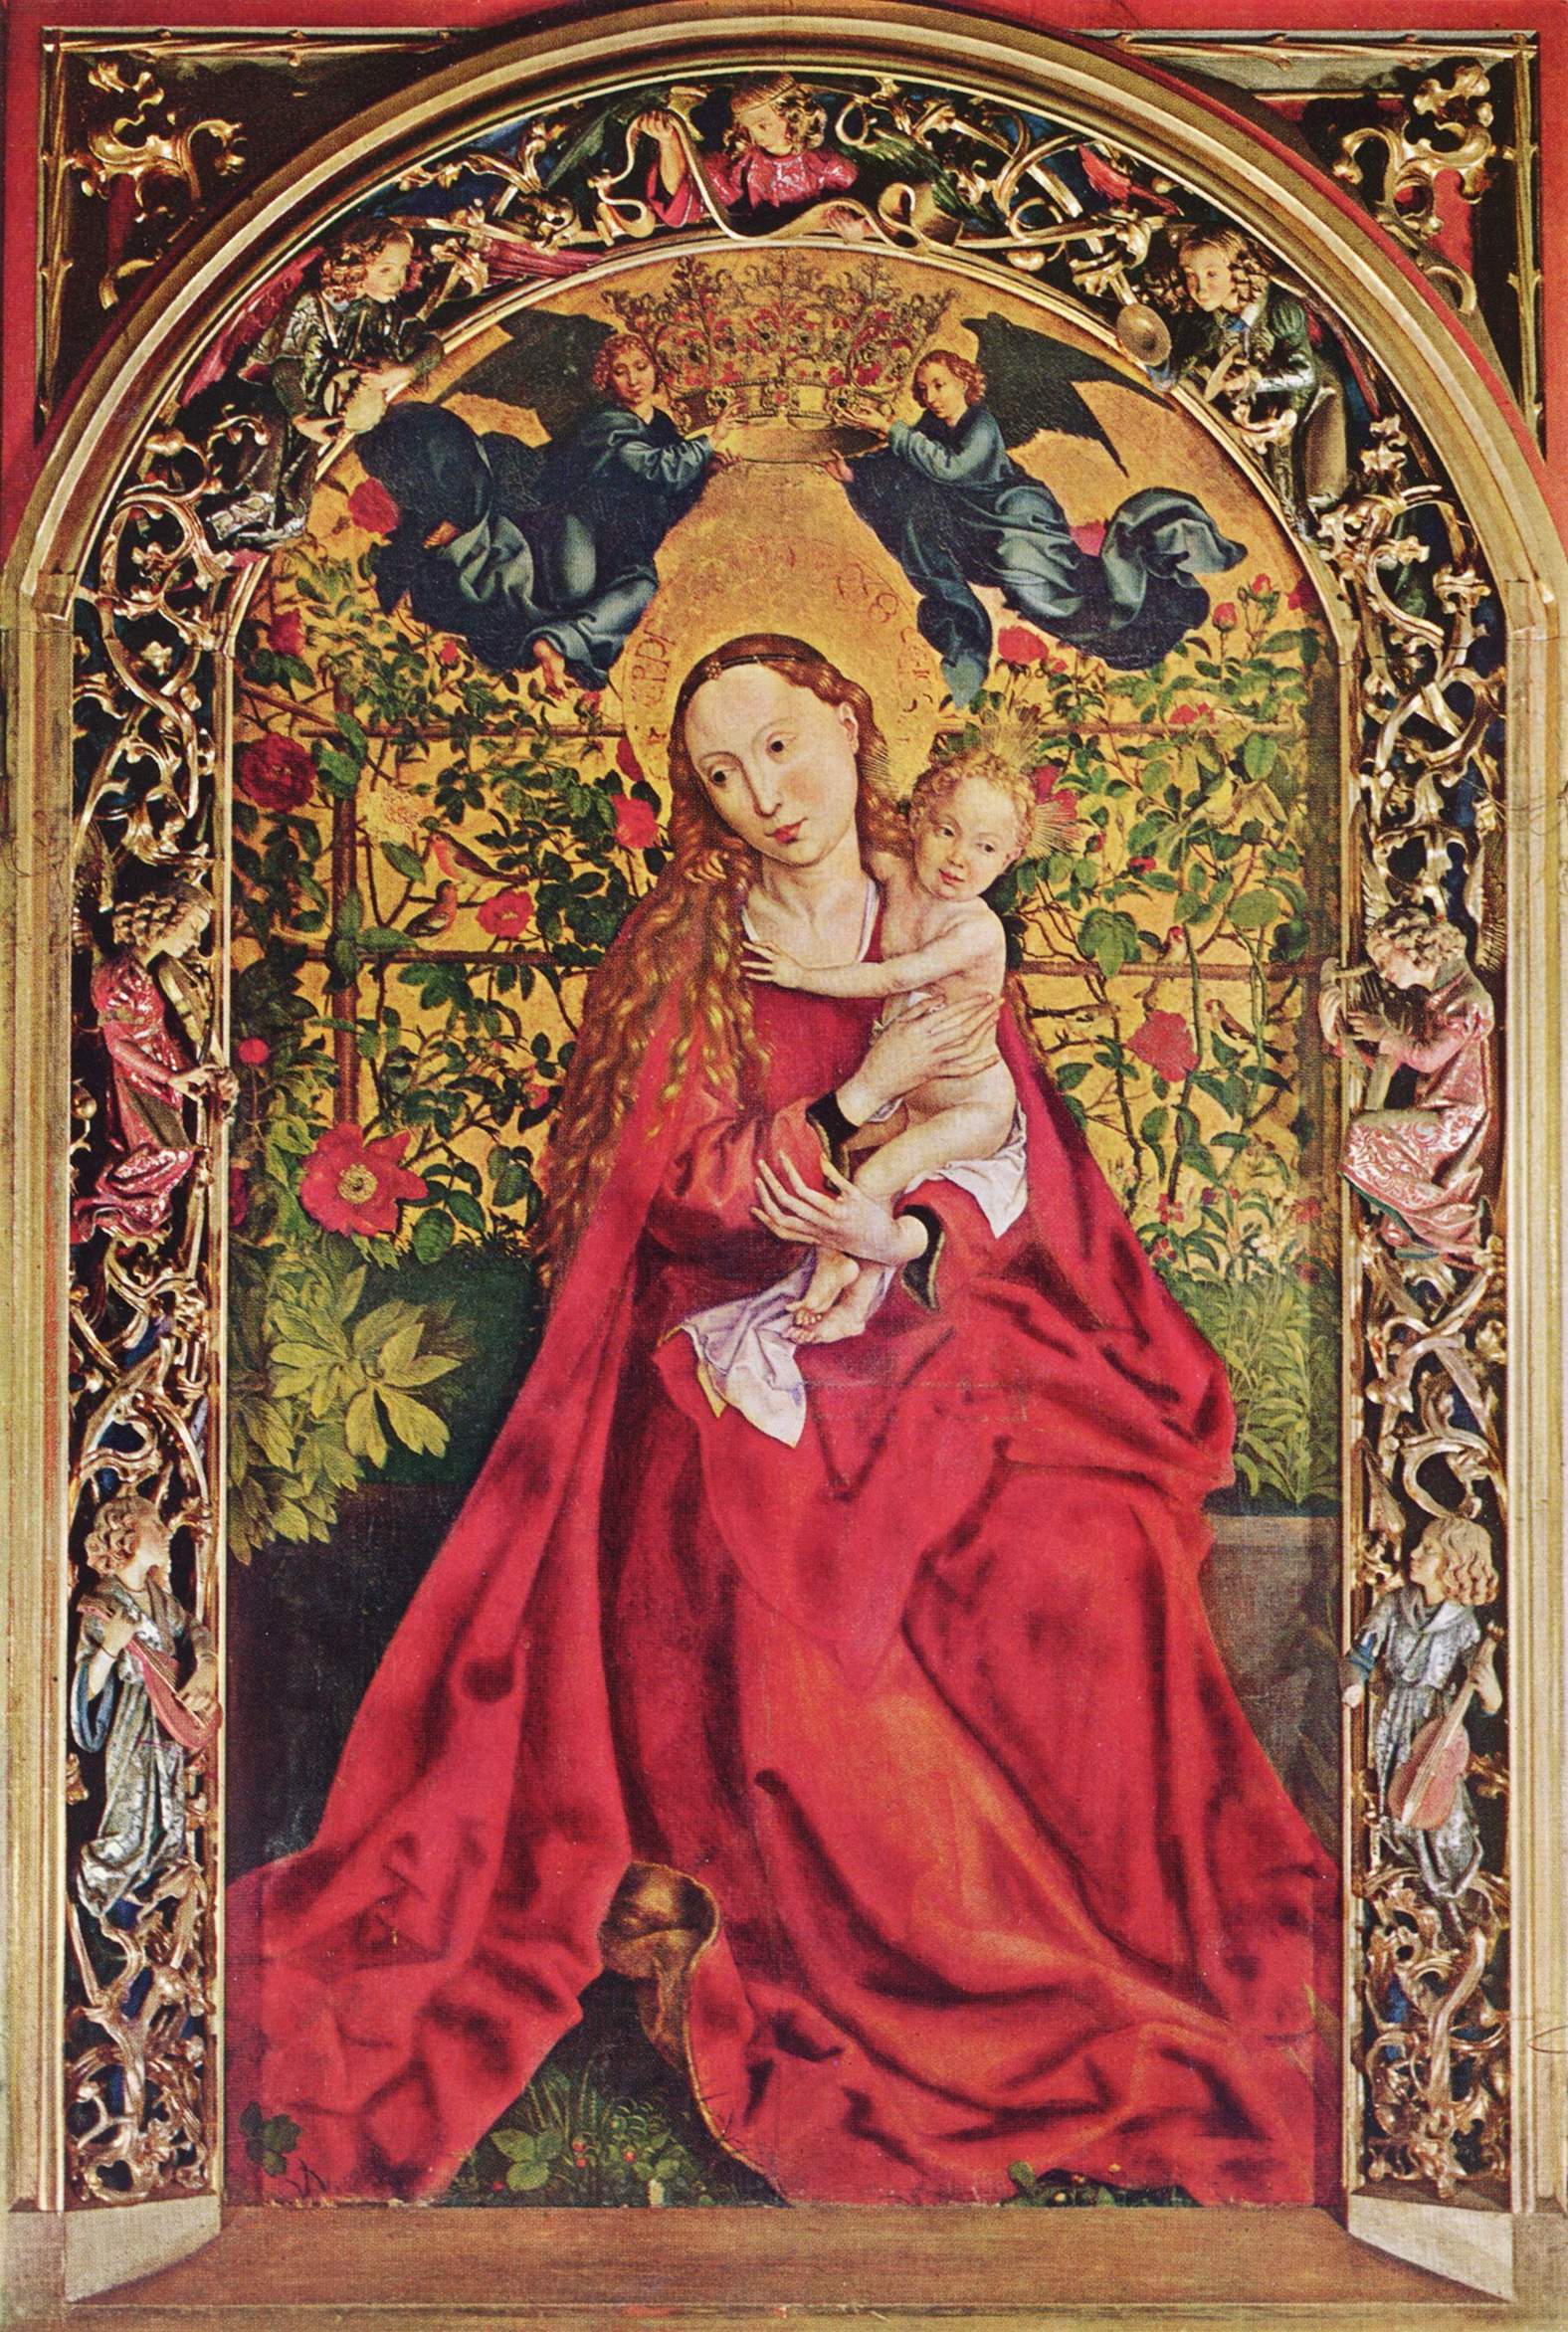 La Vierge au buisson de roses dans immagini sacre 6dsatm9i